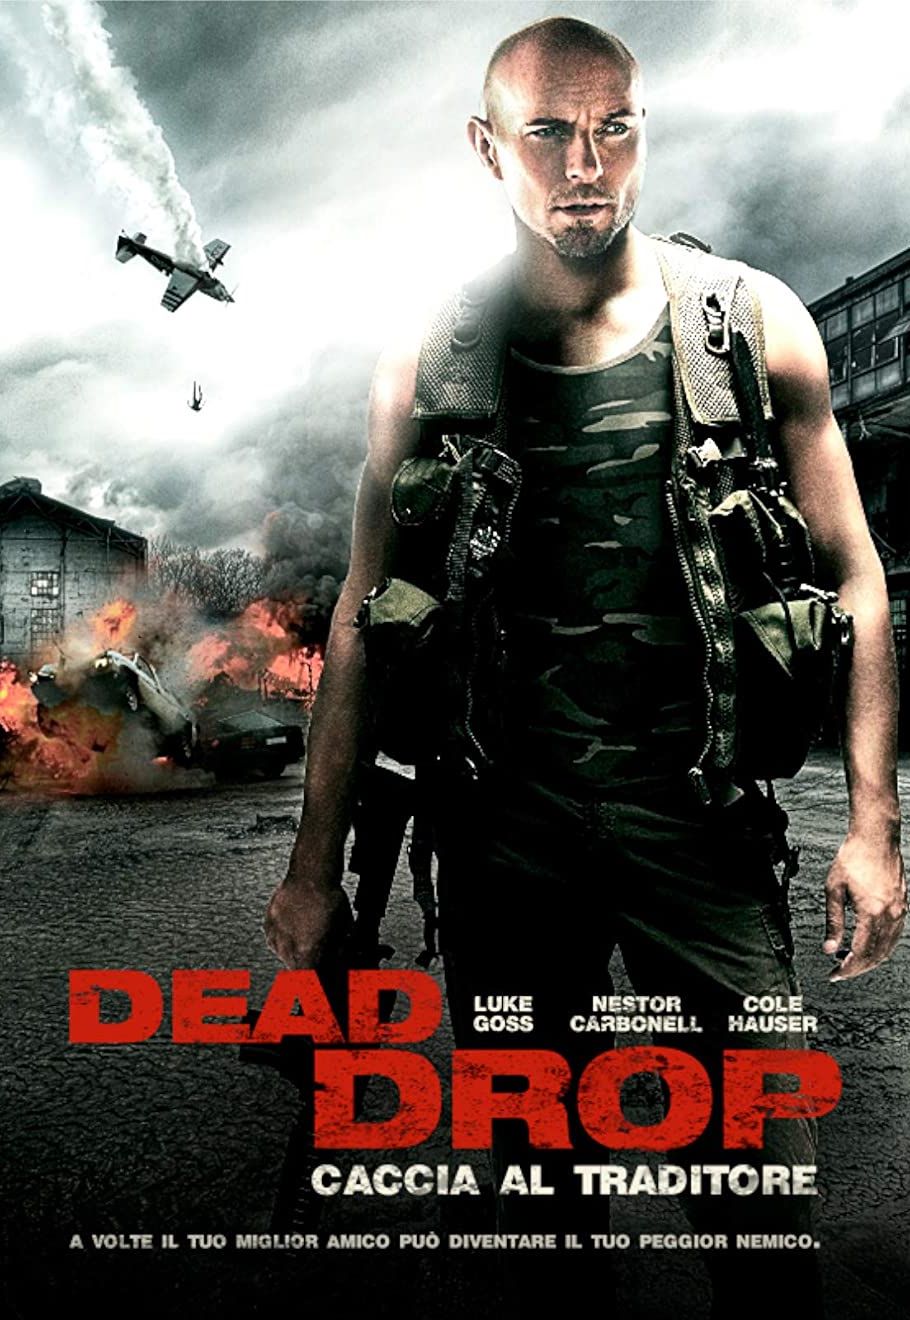 Dead Drop – Caccia al traditore [HD] (2013)